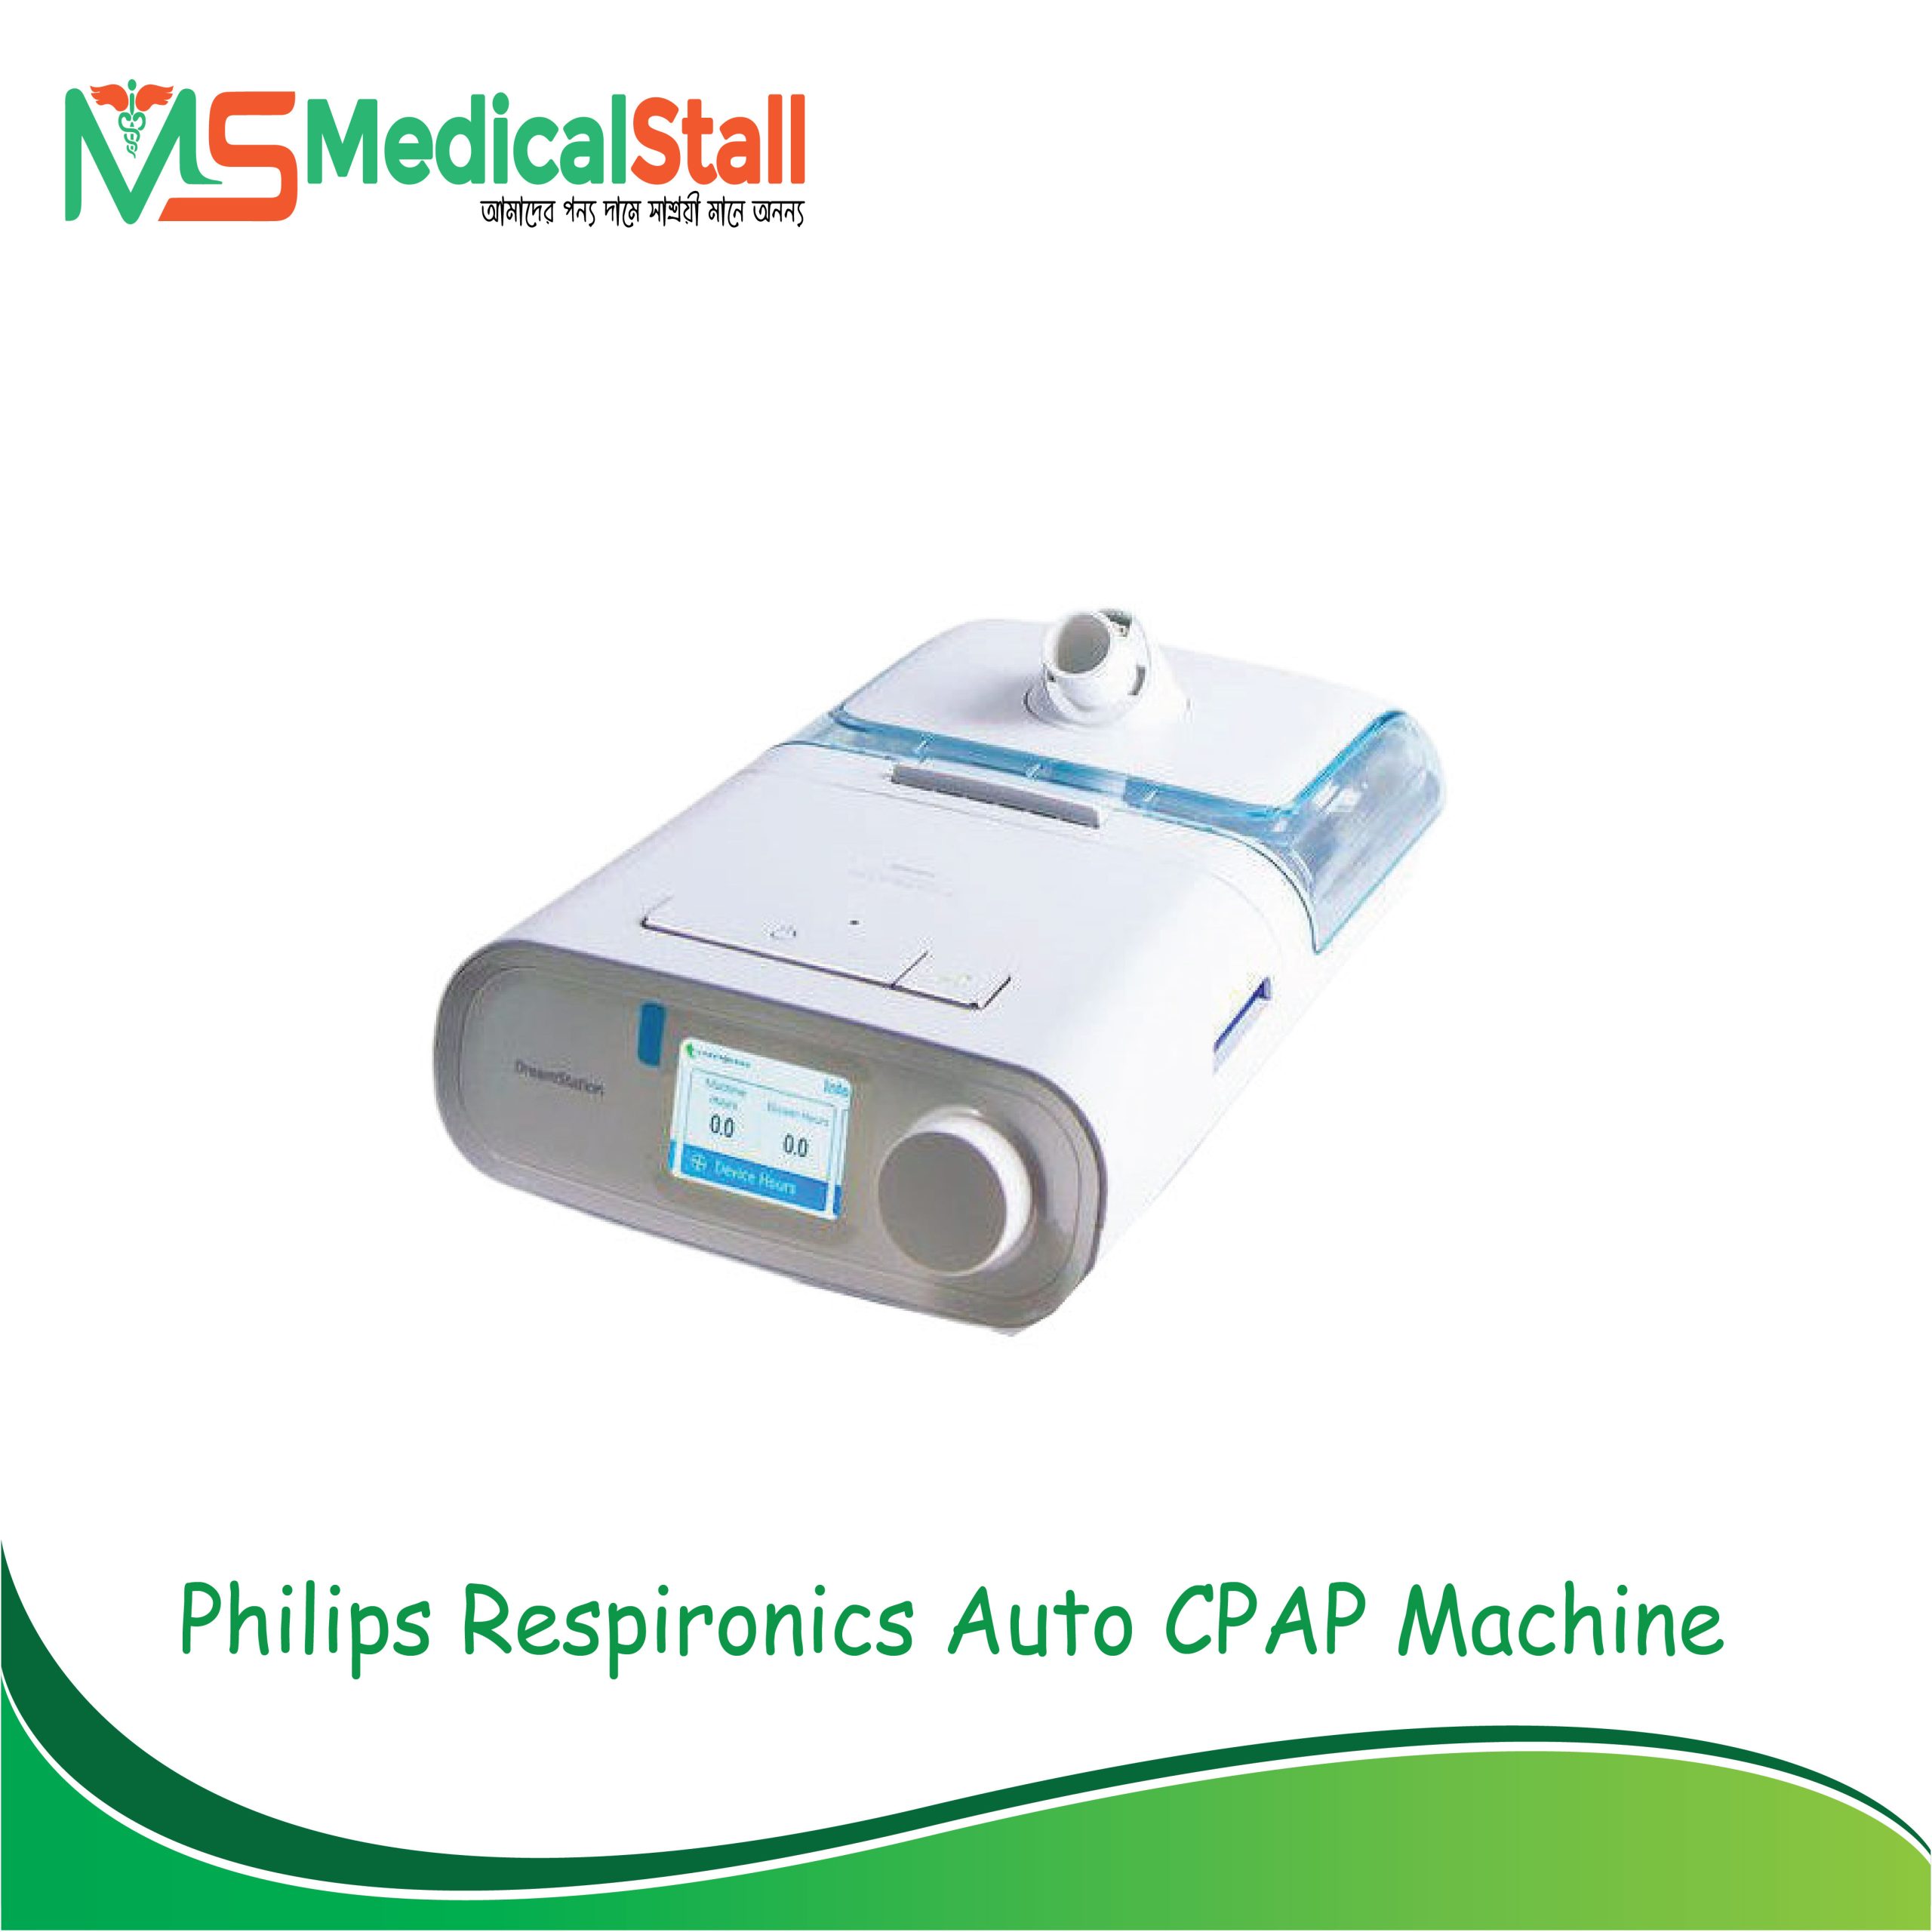 Philips Respironics Auto CPAP Machine